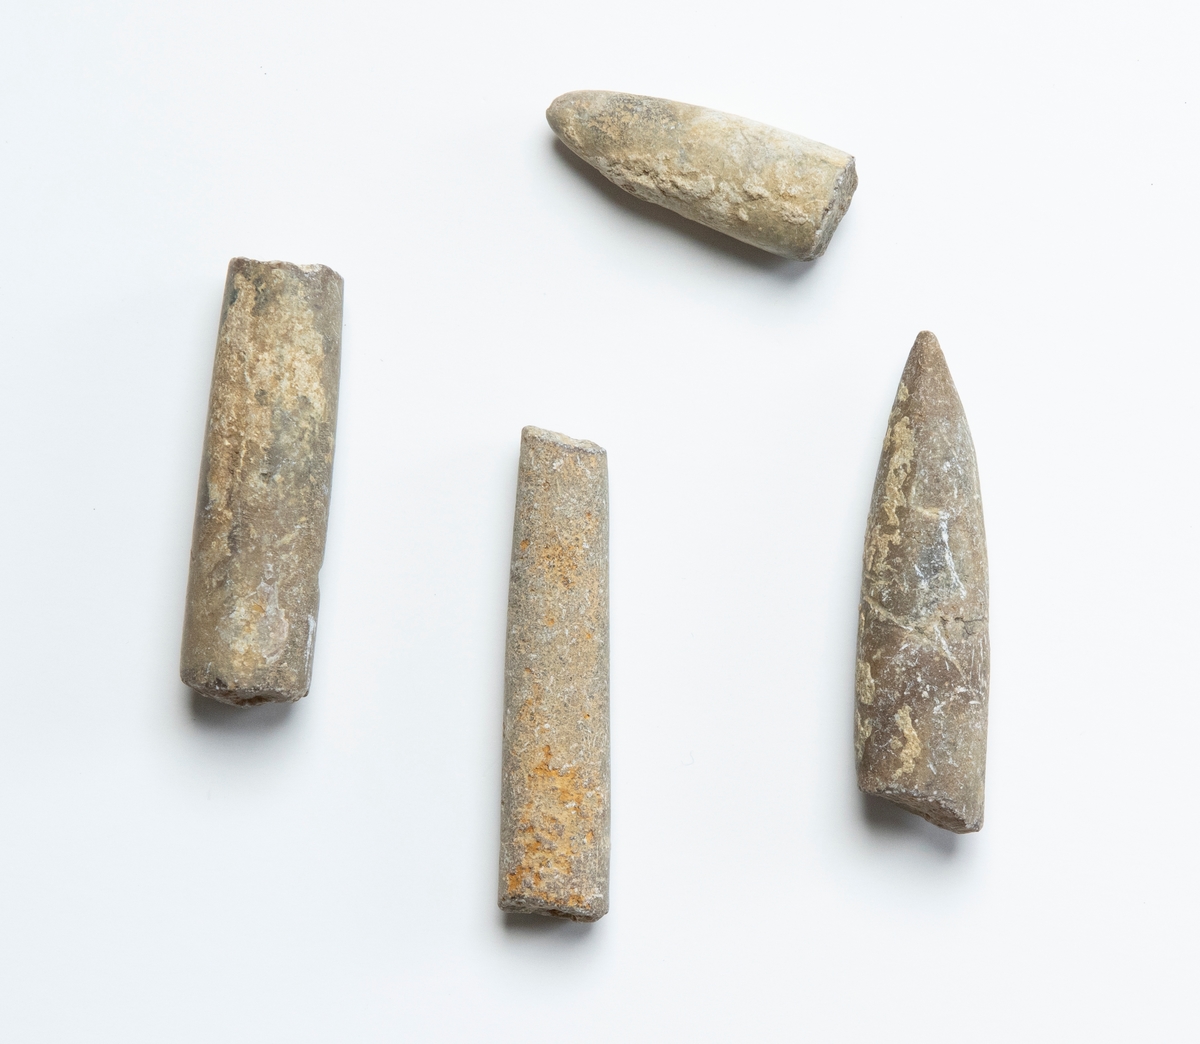 Fossil av belemniter (utdöda bläckfiskar), 4 stycken. Dessa är stenliknande och spolformade samt avbrutna.

JM 10870:1, spetsig respektive trubbig ände, längre.
JM 10870:2, spetsig respektive trubbig ände, kortar.
JM 10870:3, trubbiga ändar, längre.
JM 10870:4, trubbiga ändar, kortare.